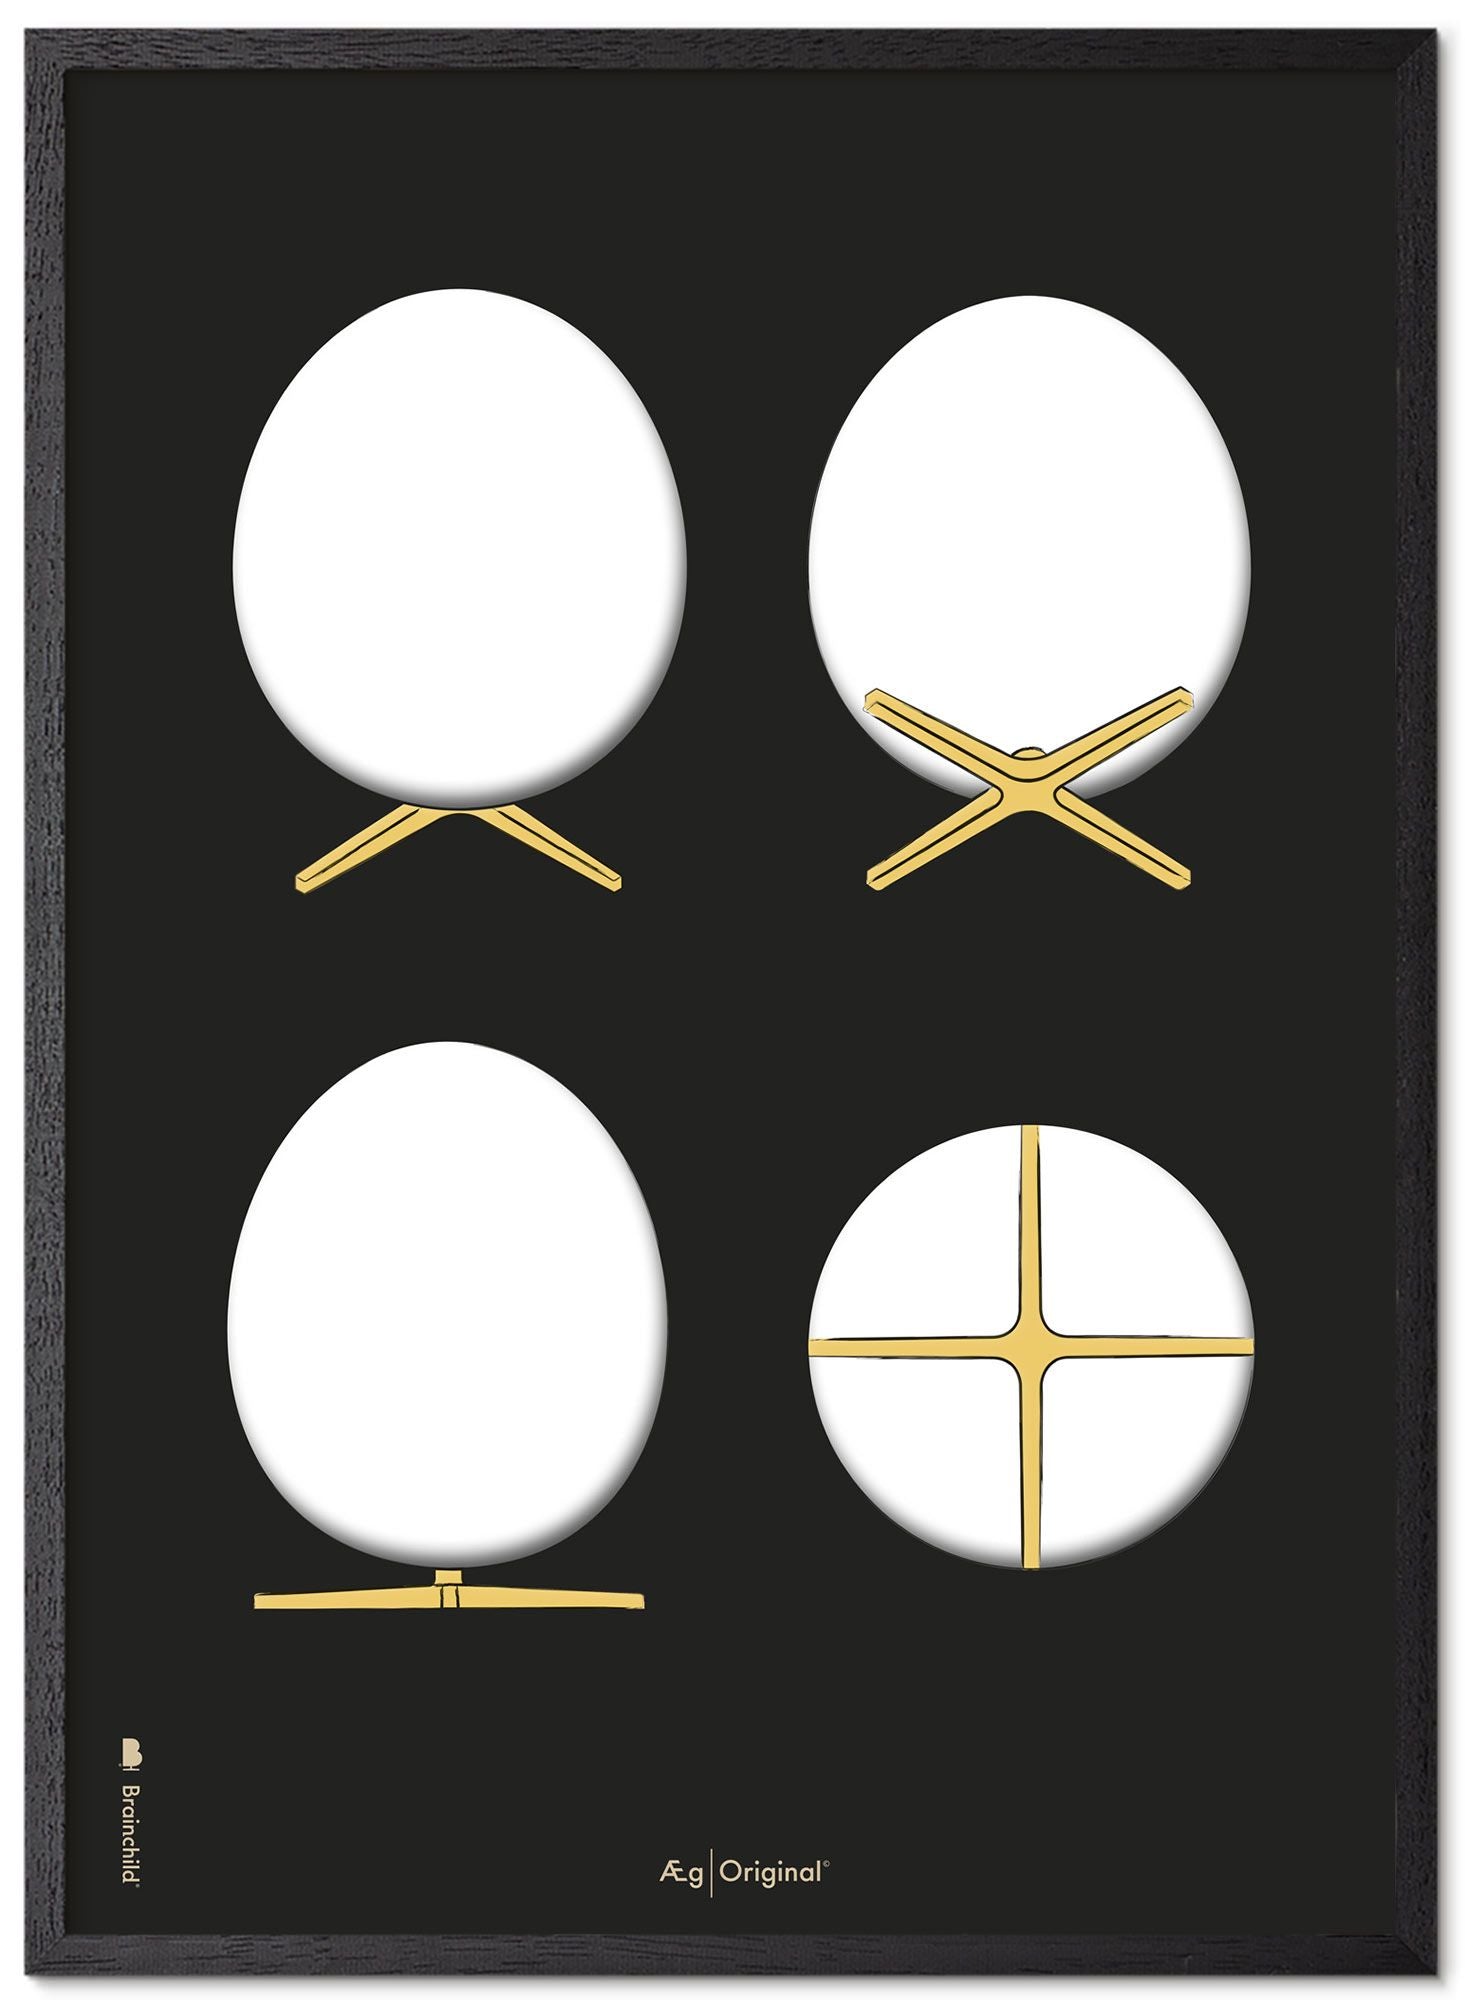 Prepare el marco de póster de bocetos de diseño de huevo hecho de madera lacada negra A5, fondo negro